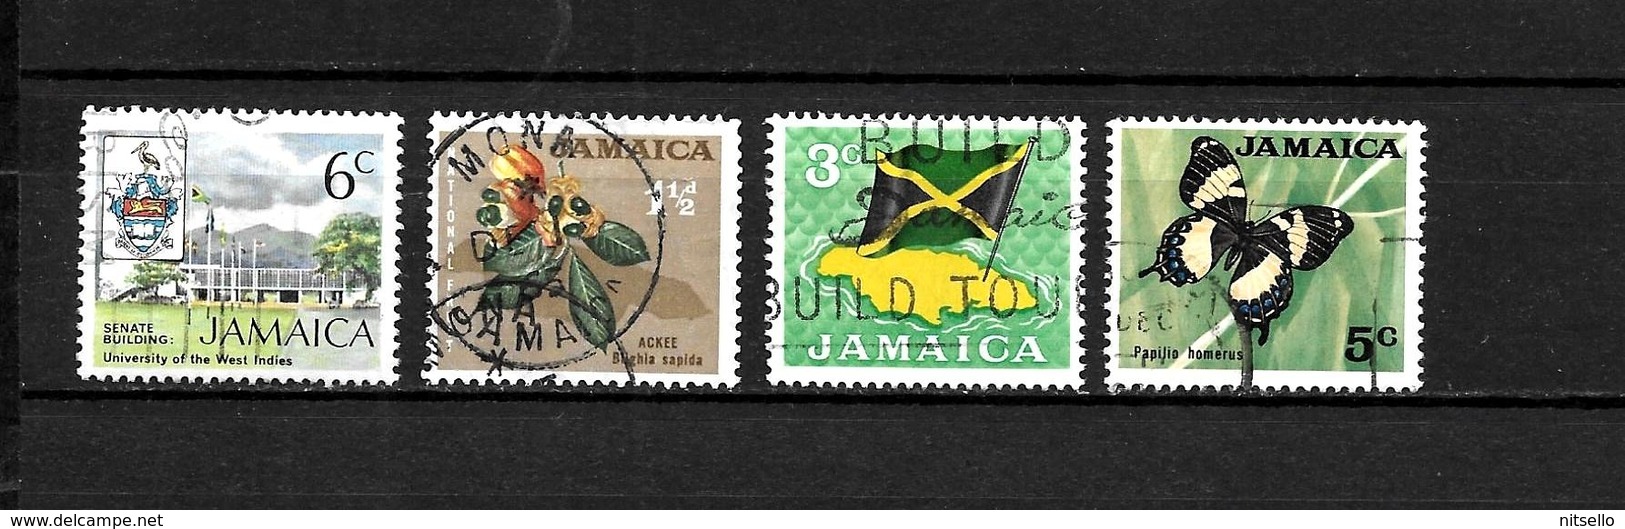 LOTE 1991  ///    JAMAICA    ¡¡¡ OFERTA - LIQUIDATION !!! JE LIQUIDE !!! - Jamaique (1962-...)